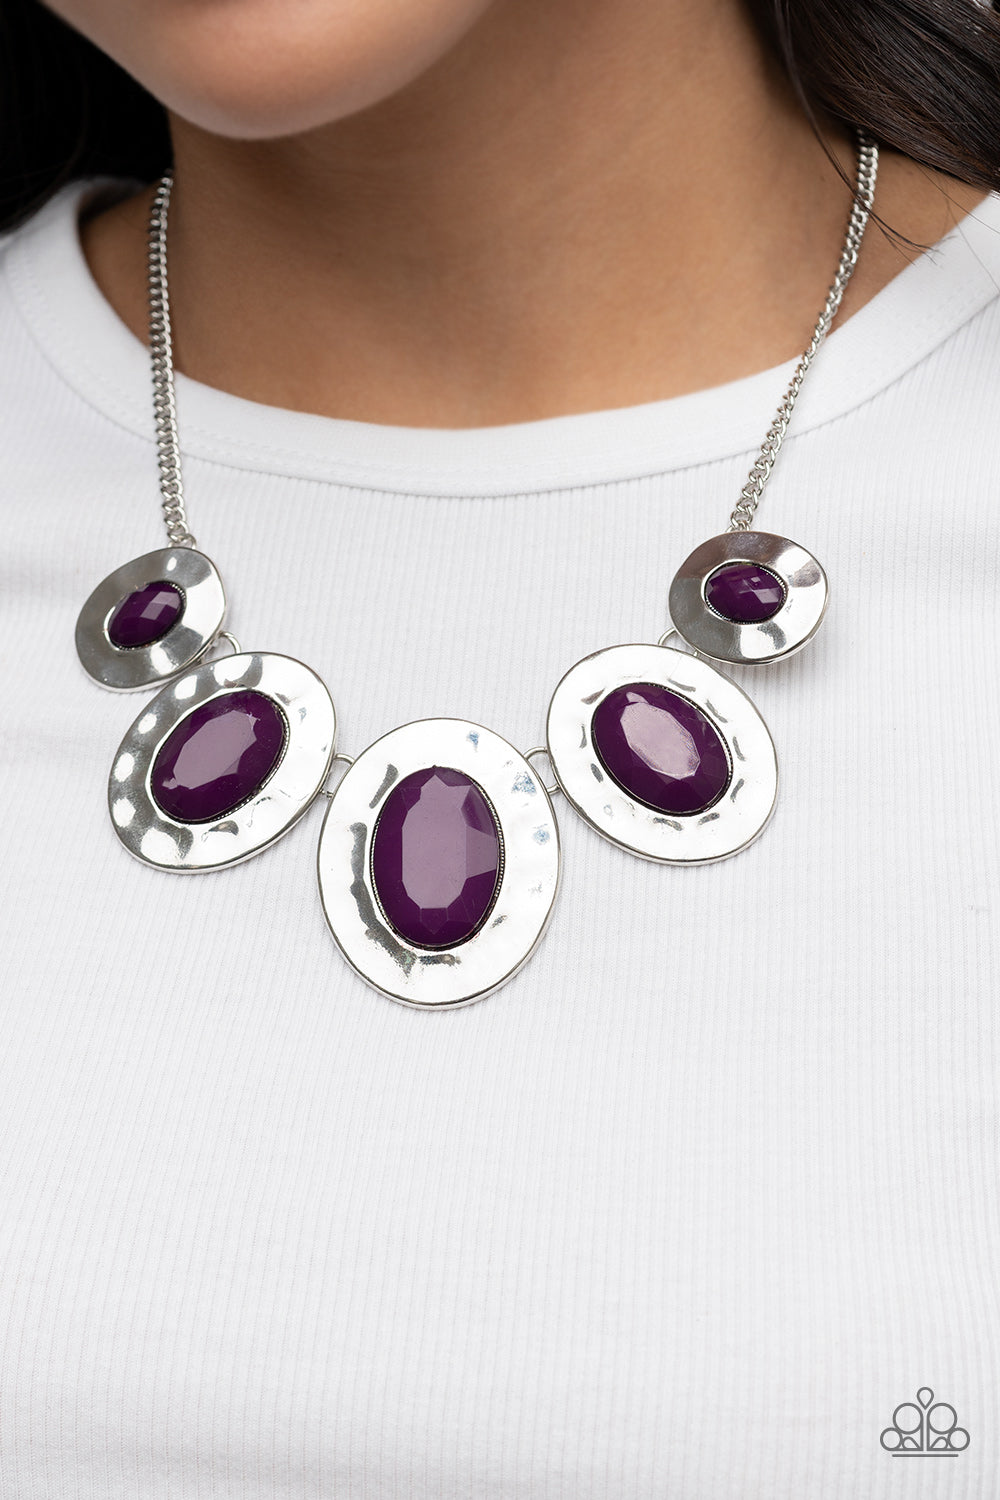 Rivera Rendezvous - Purple Necklace - Paparazzi Accessories